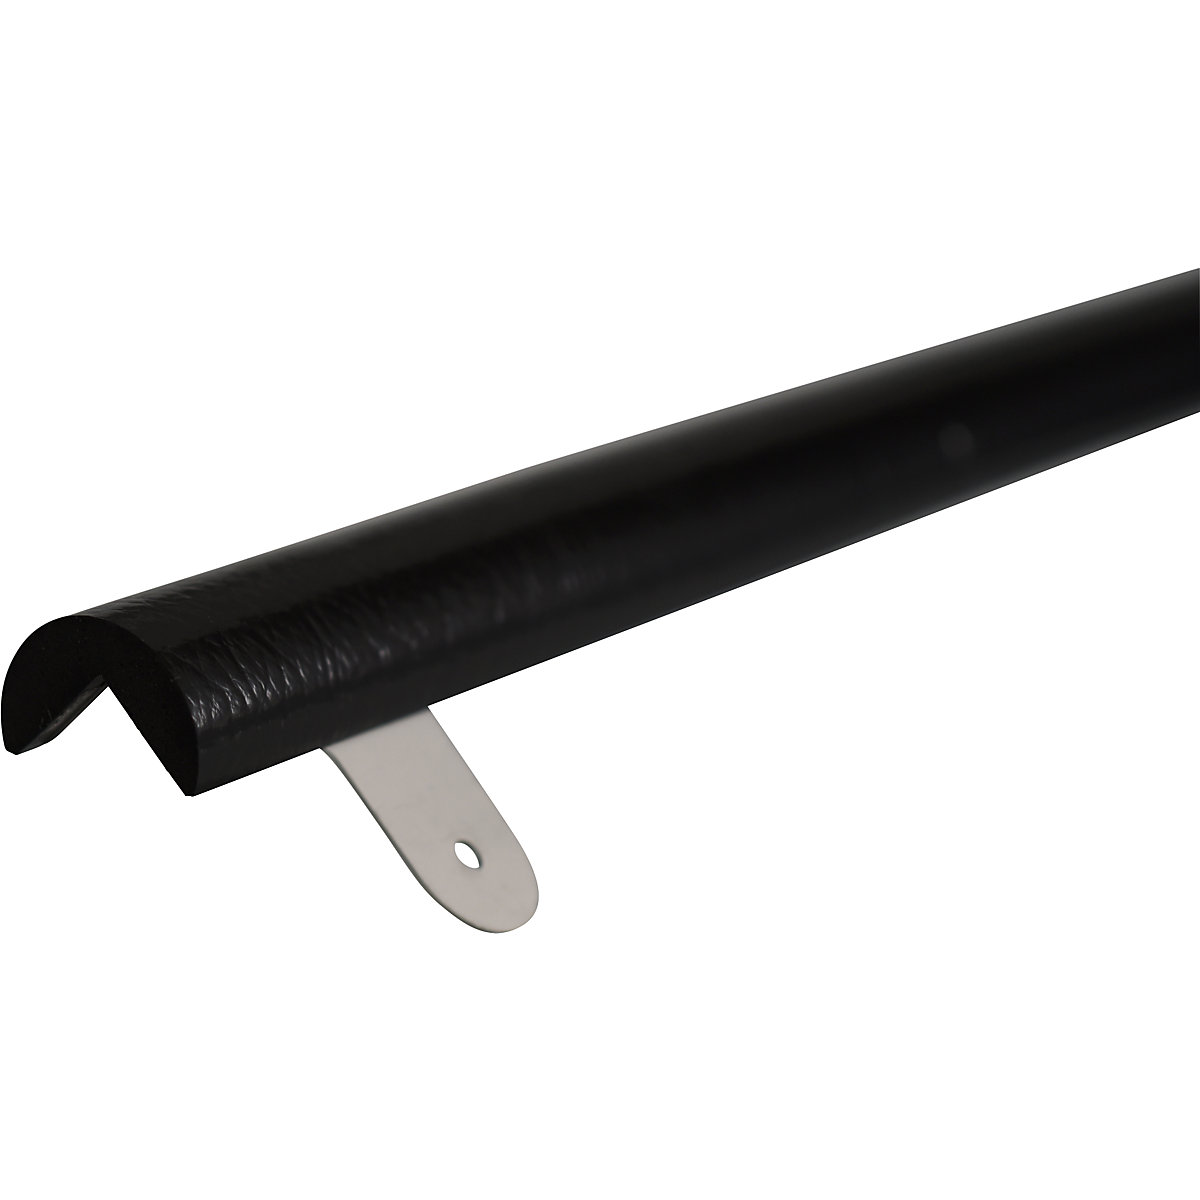 Zaščita vogalov Knuffi®, z montažno letvijo – SHG, tip A, kos 1 m, črne barve-10